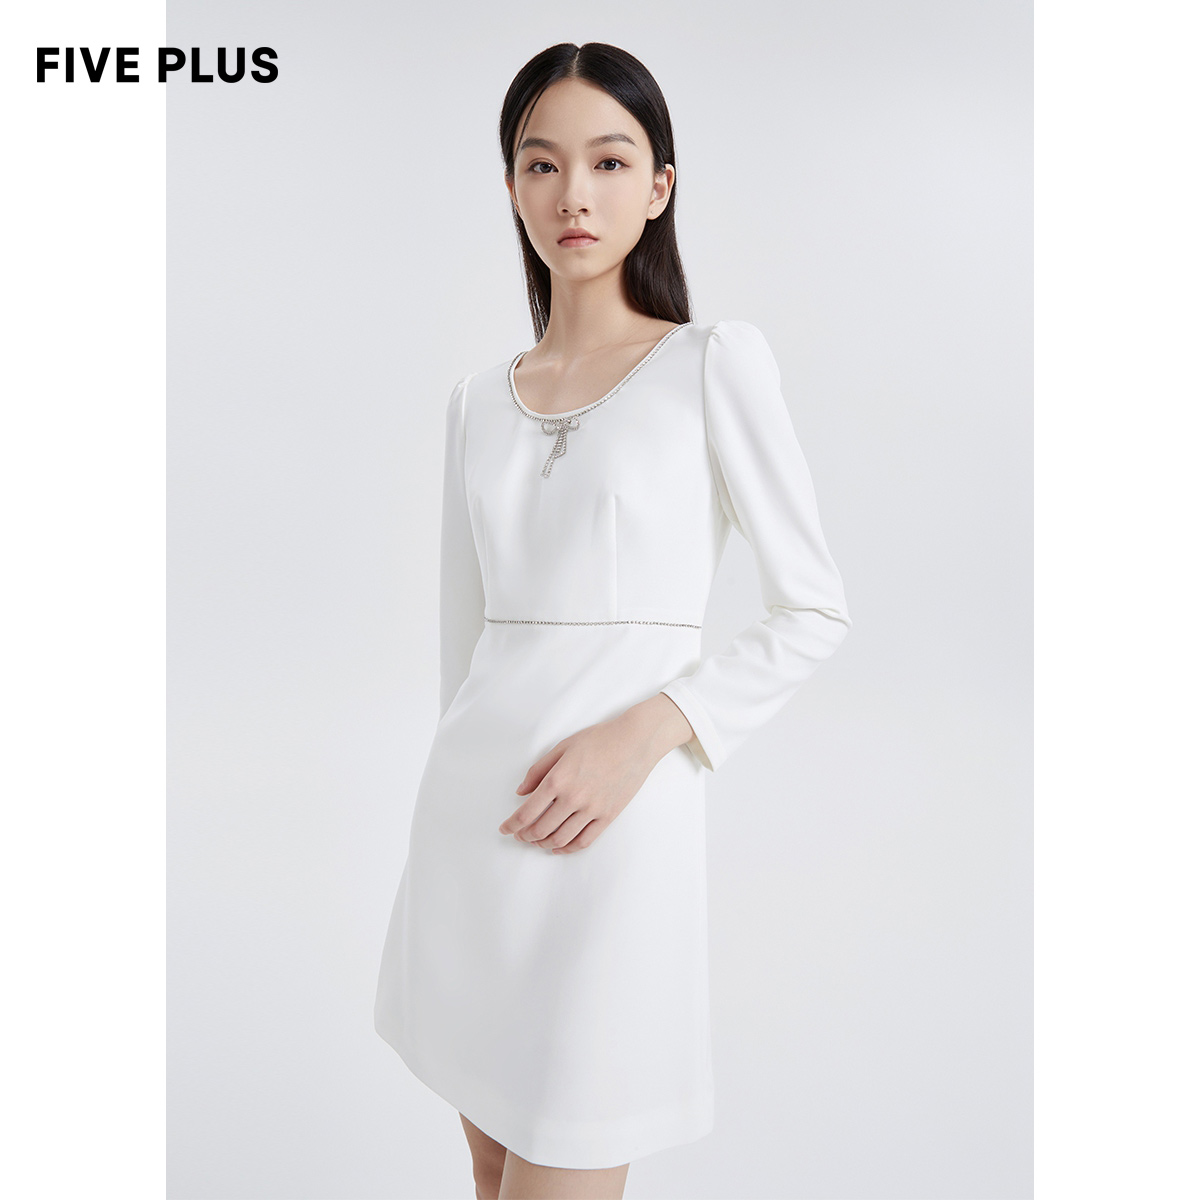 Five Plus 5+ 女秋装法式气质连衣裙高腰长袖小众裙子轻熟风 97.39元